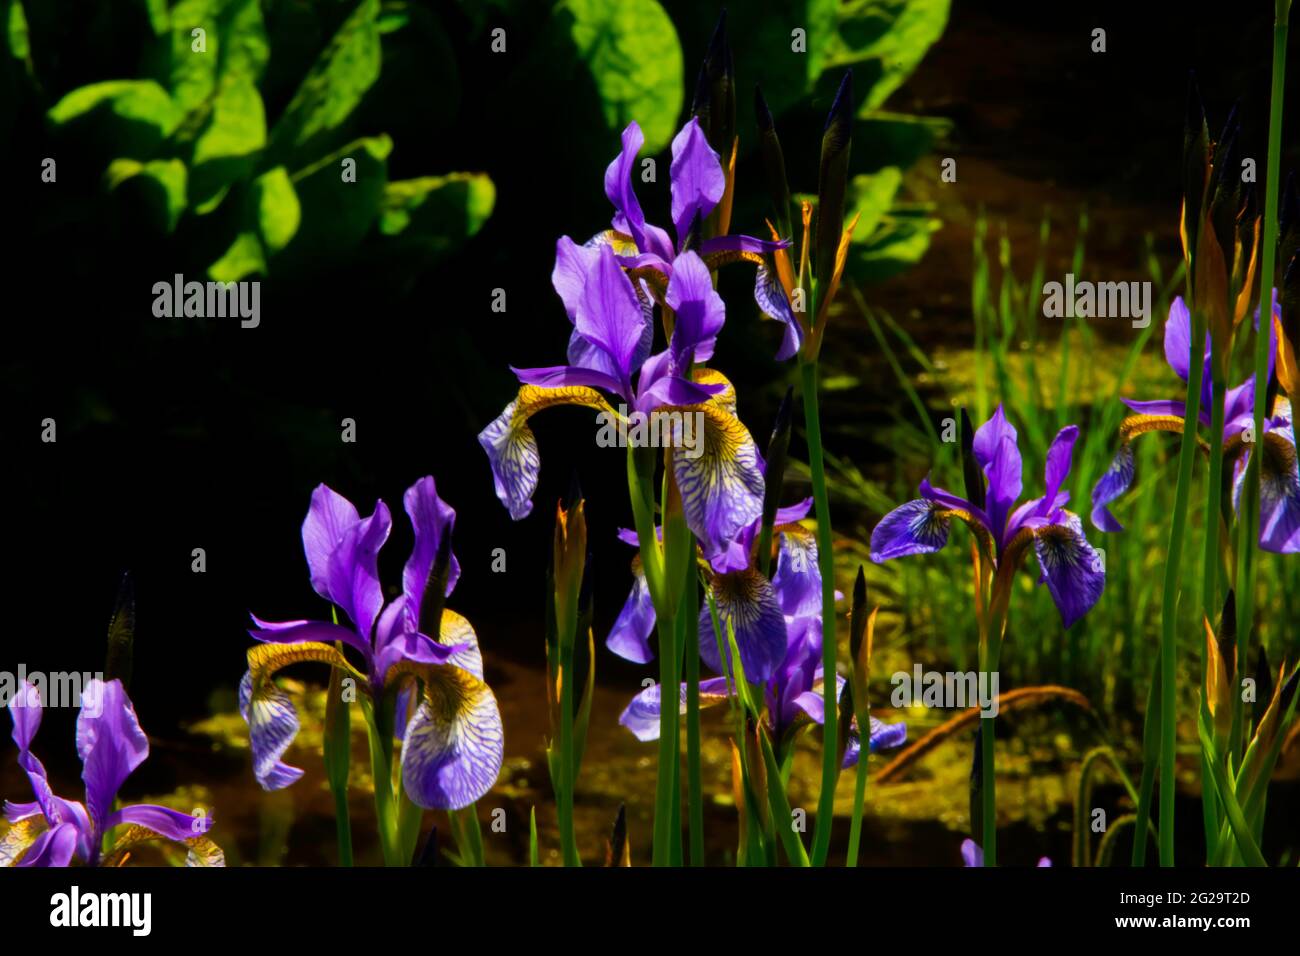 Rhizomatous herbaceous perennial, Siberian Irises or Iris sibirica flower in the gardens at the Crichton, Dumfries, Scotland Stock Photo